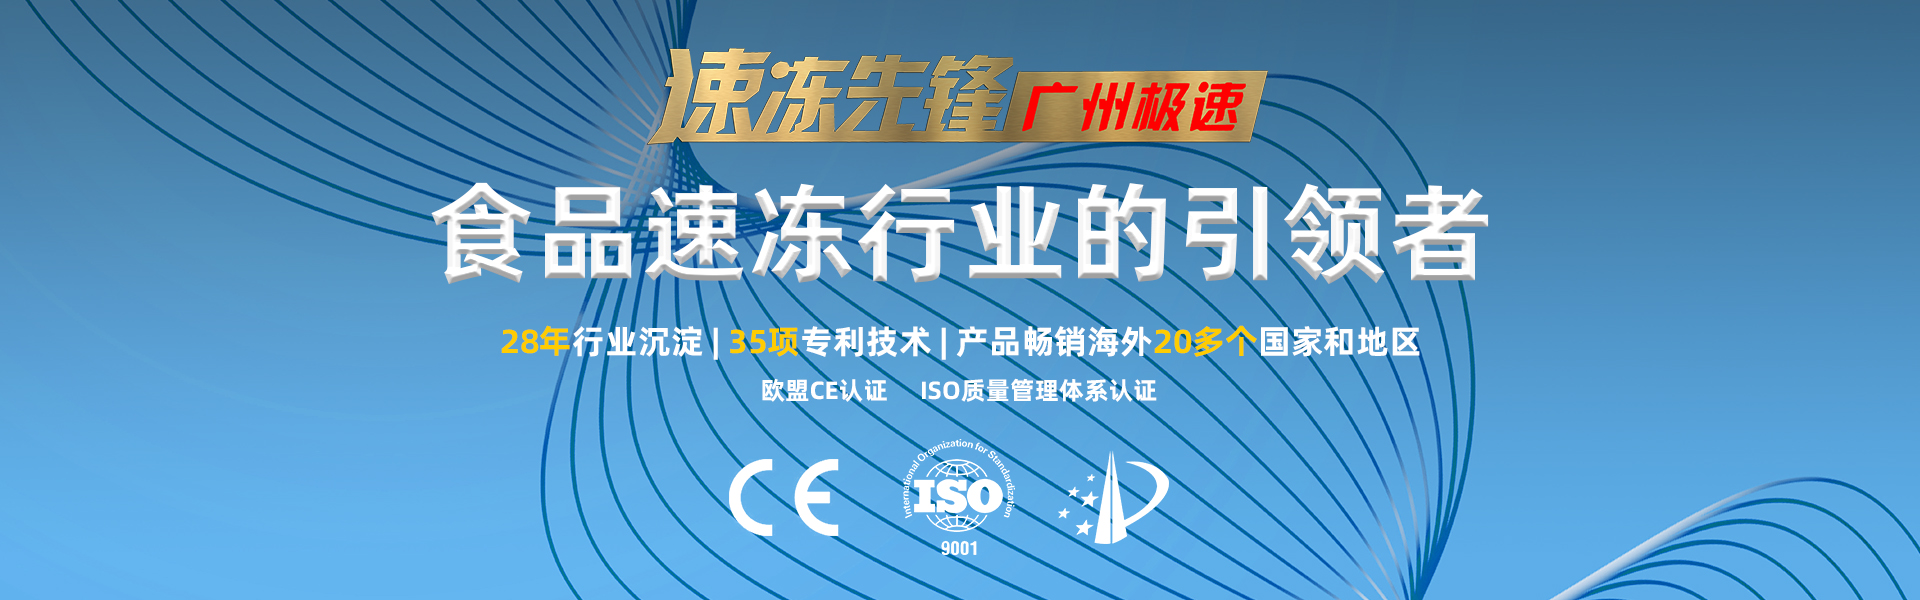 广州 隧道式液氮速冻机一台 隧道式液氮液氮速冻机 大型商用液氮速冻机 较速制冷